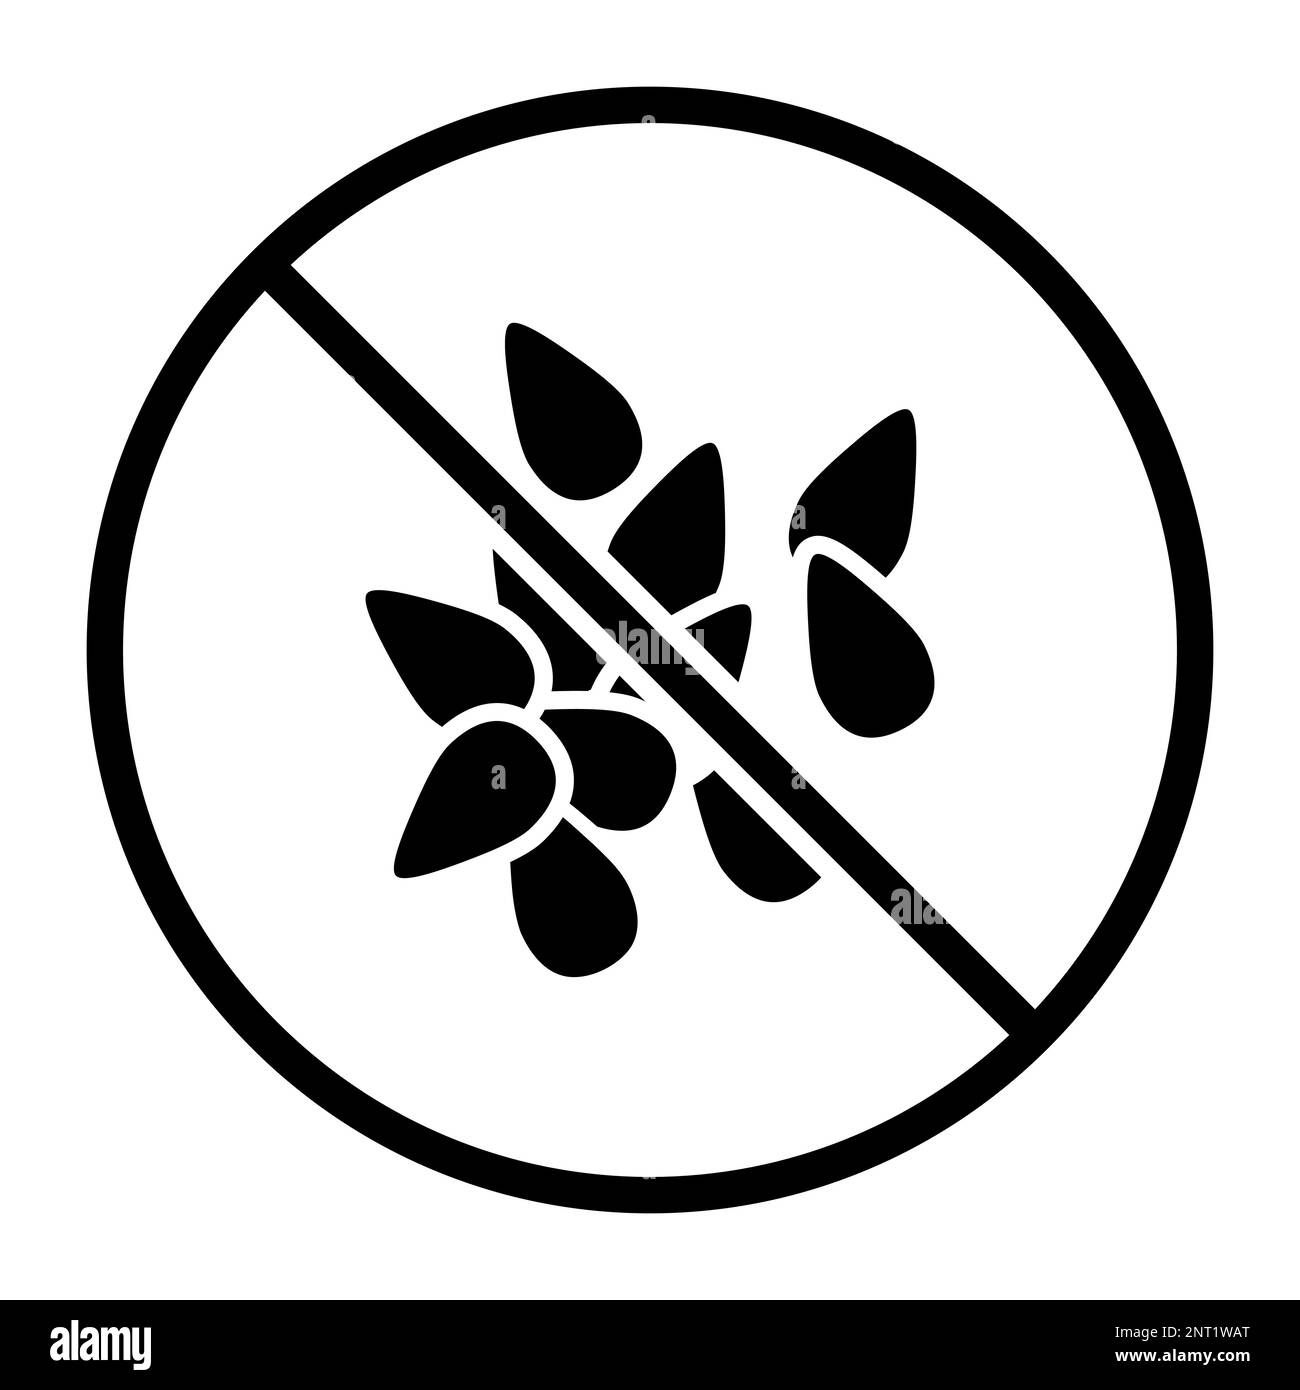 Kein Sesam-Symbol: Konzept für Lebensmittel, Zutaten und Allergene Stock Vektor